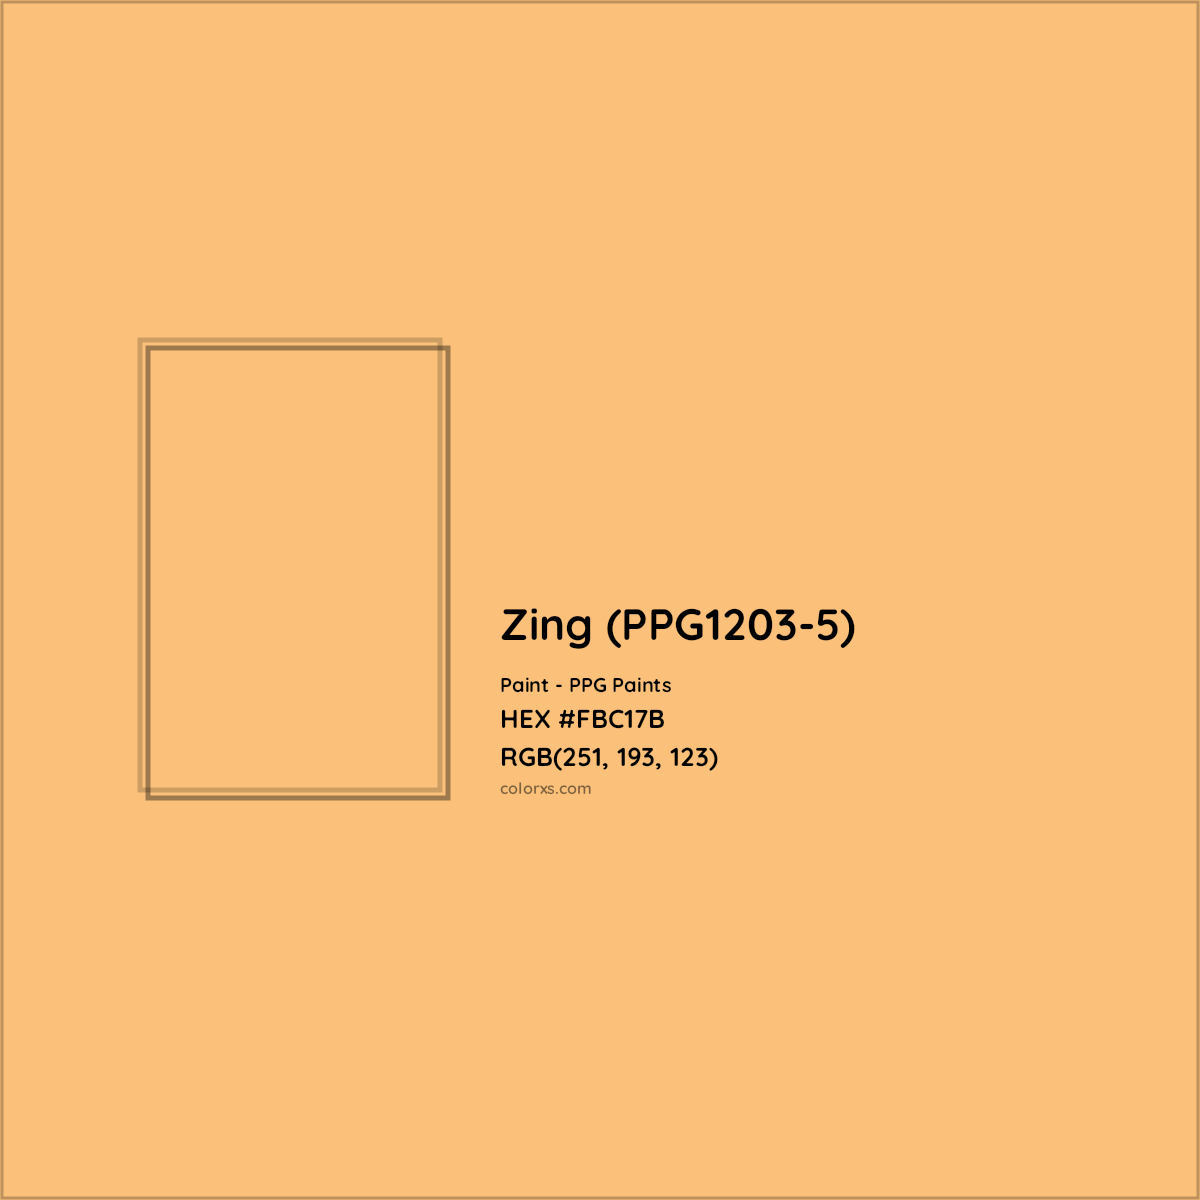 HEX #FBC17B Zing (PPG1203-5) Paint PPG Paints - Color Code